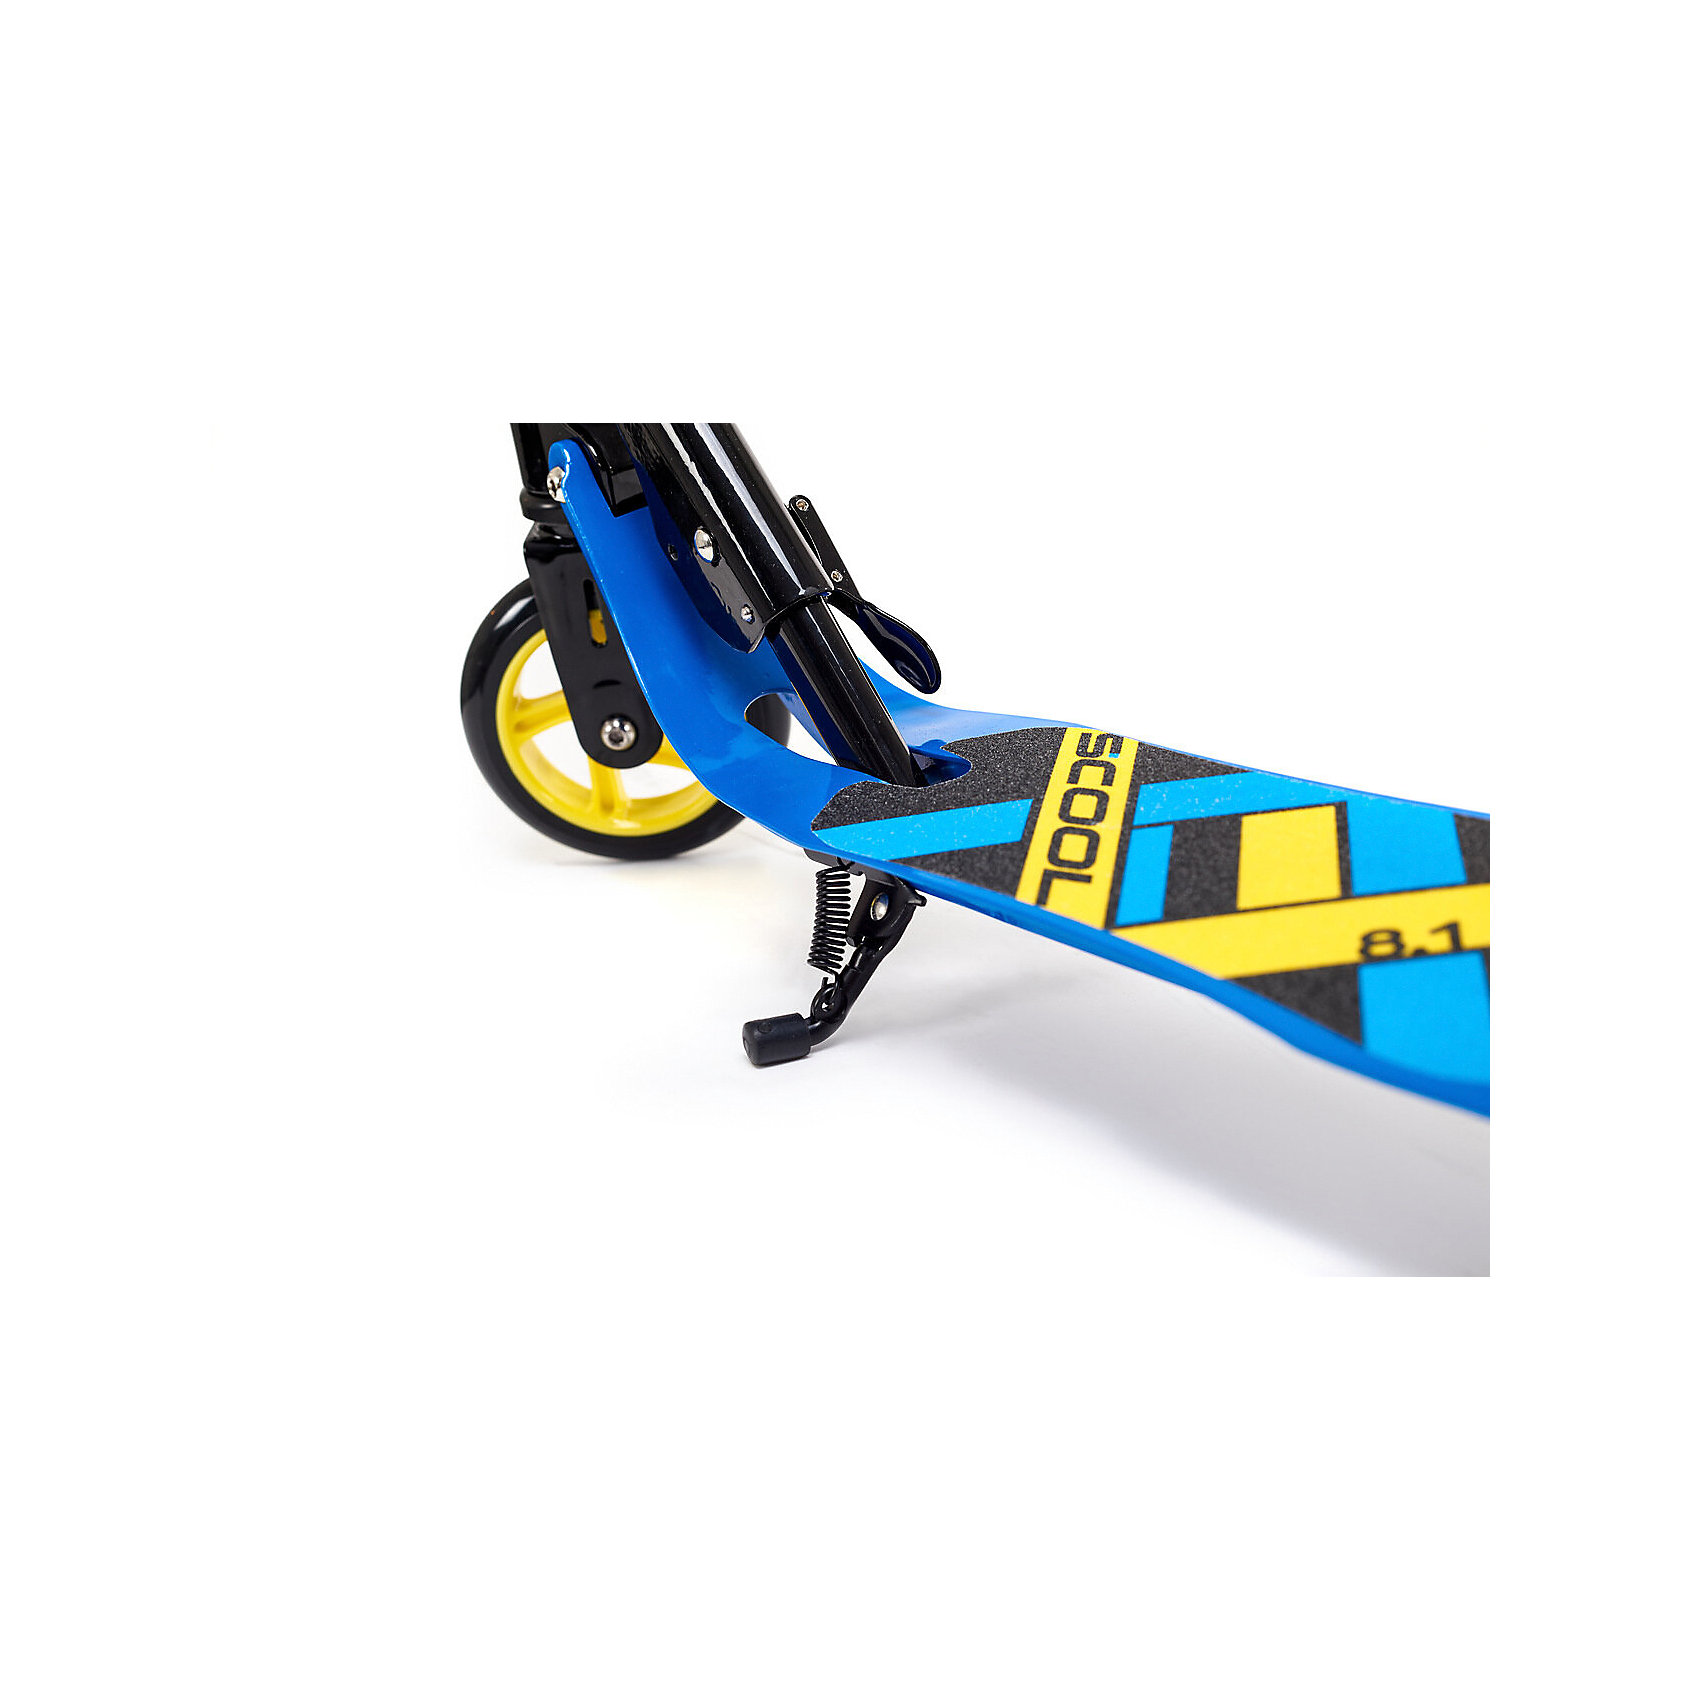 фото Двухколёсный самокат Scool Flax 8.1, сине-жёлтый